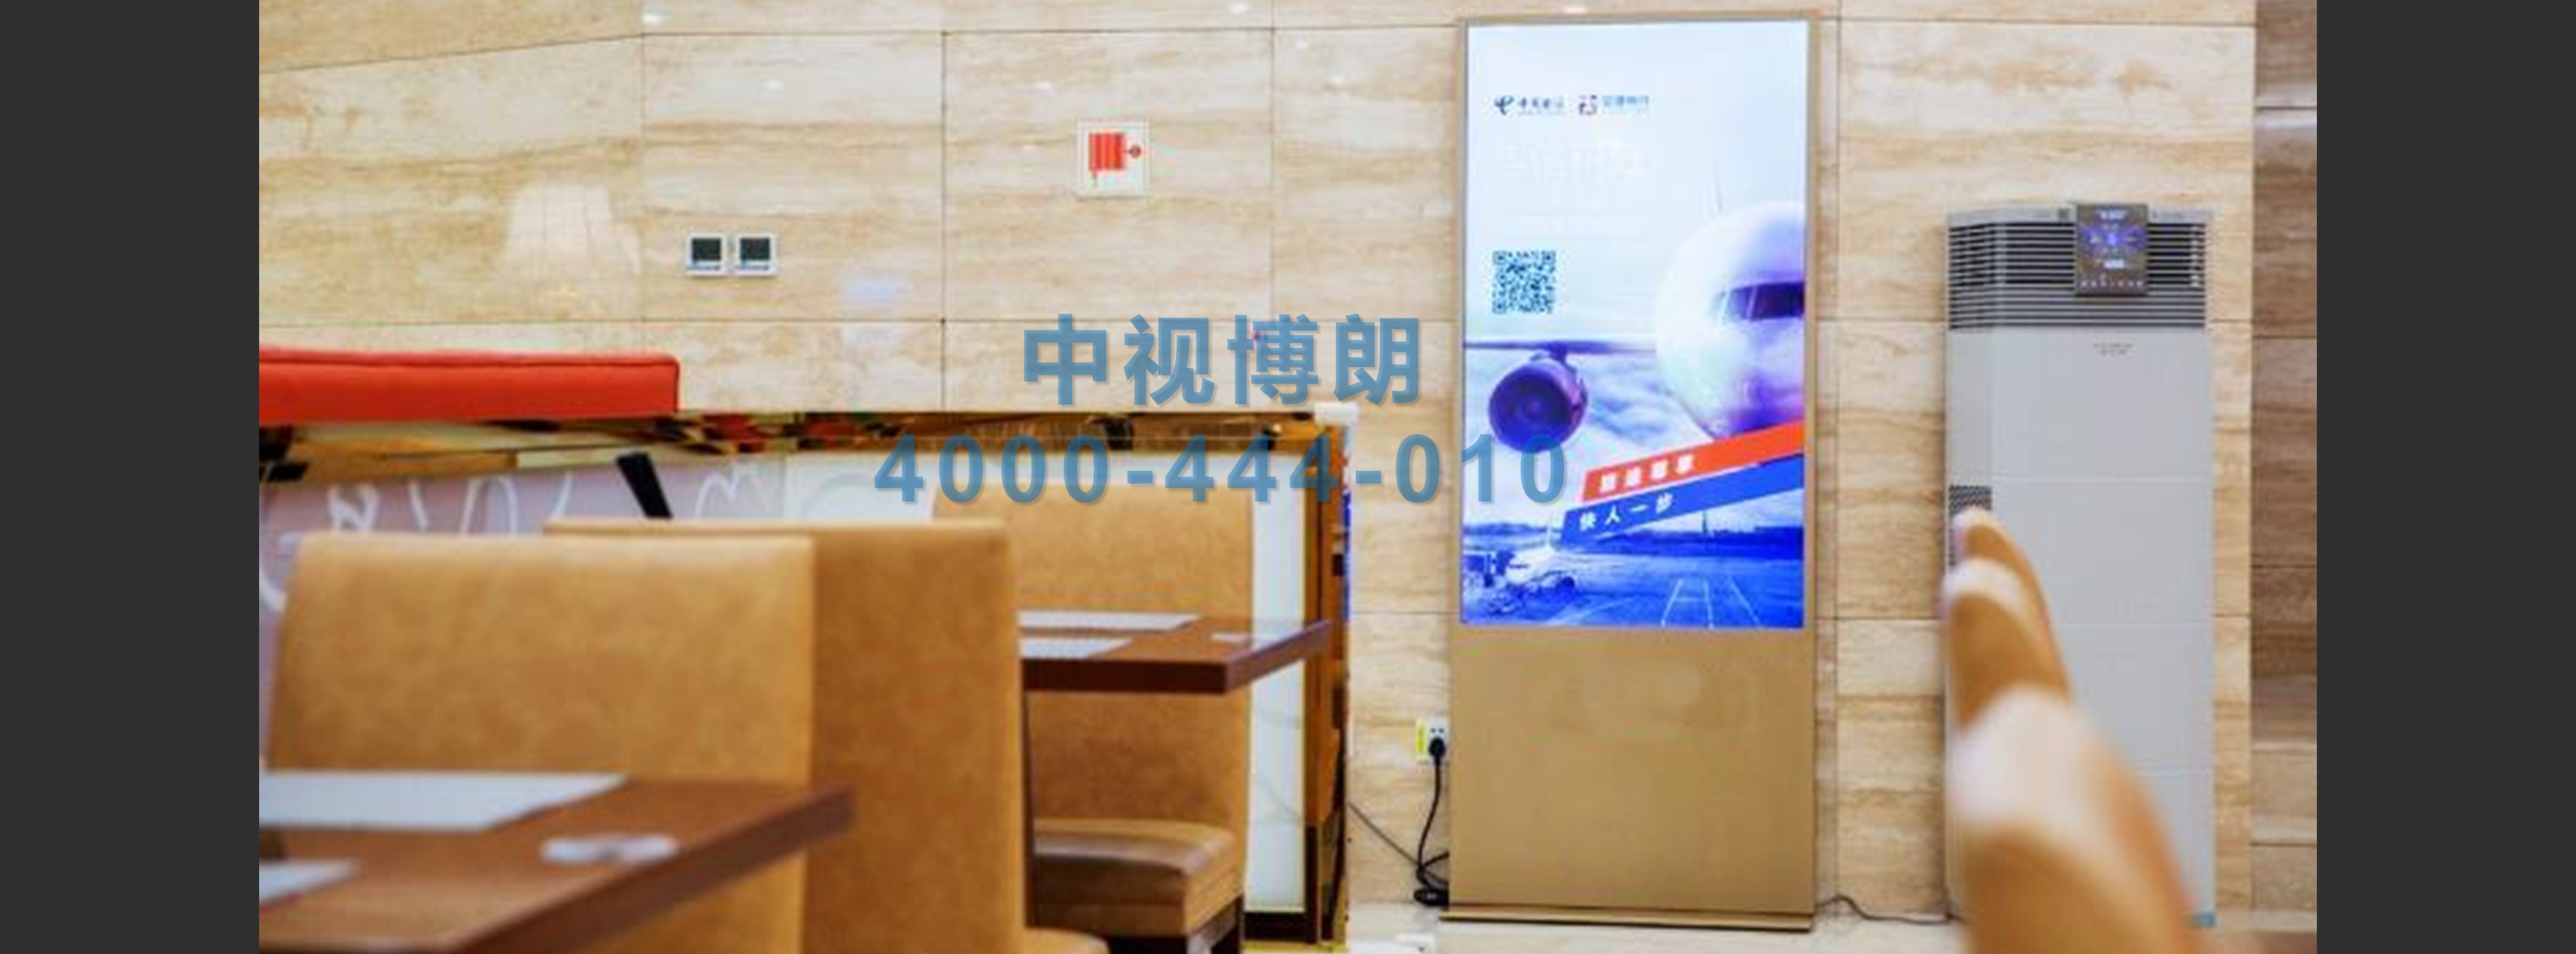 北京首都机场广告-出发贵宾室联排刷屏